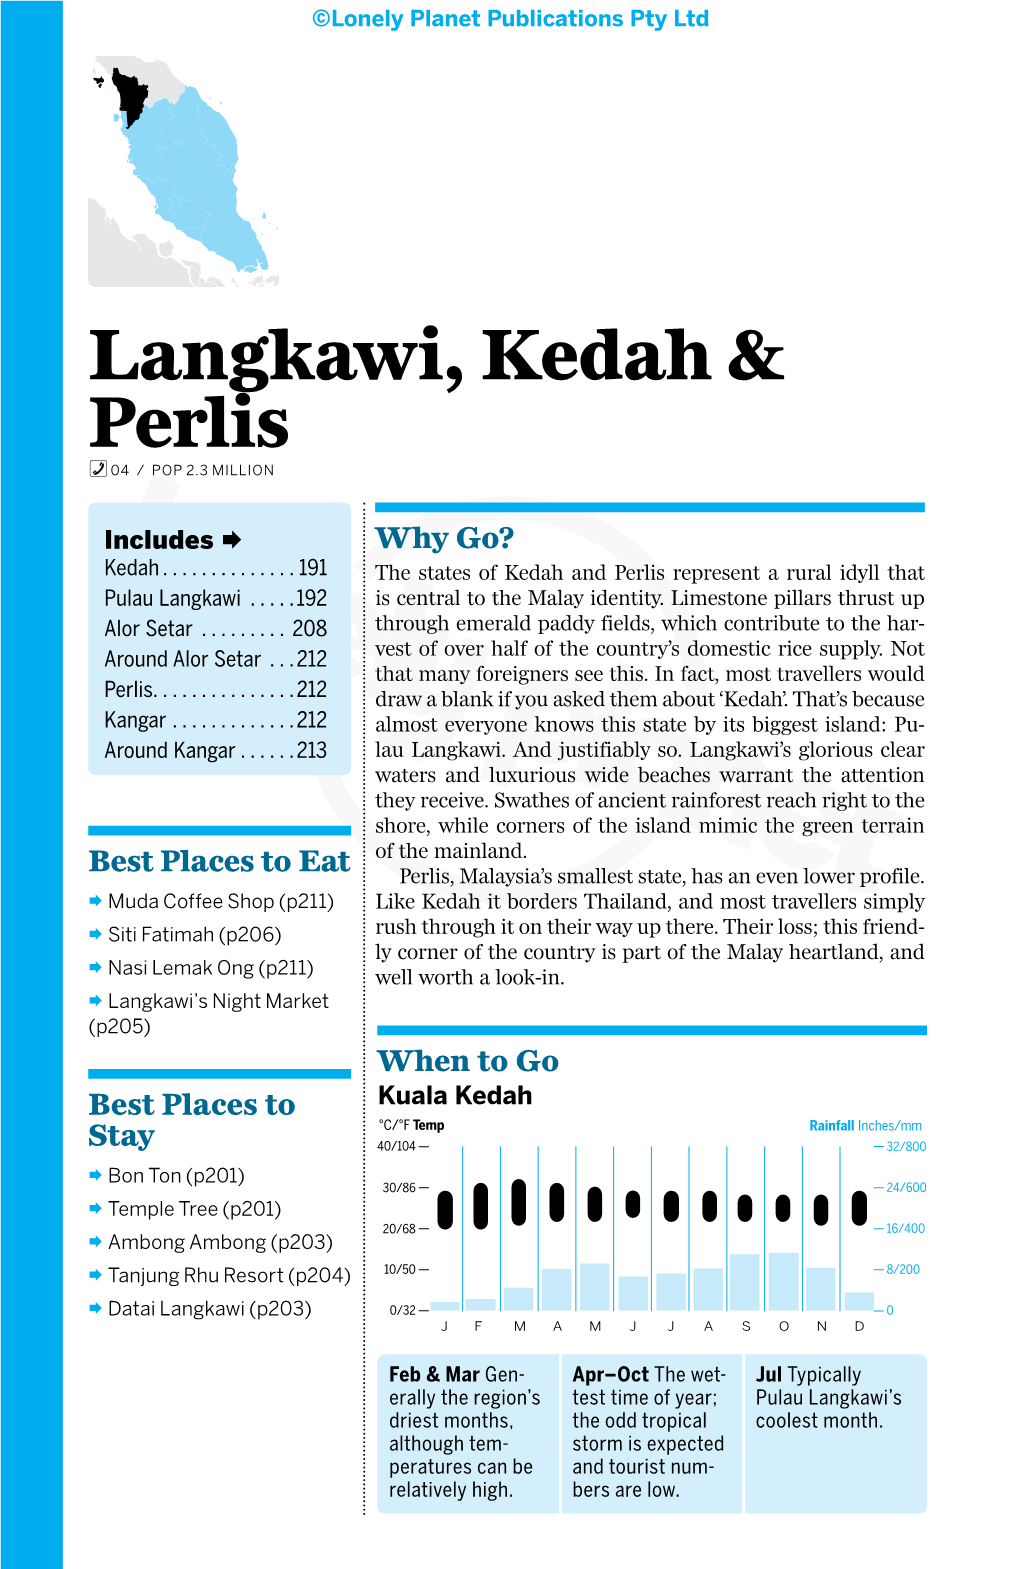 Langkawi, Kedah & Perlis